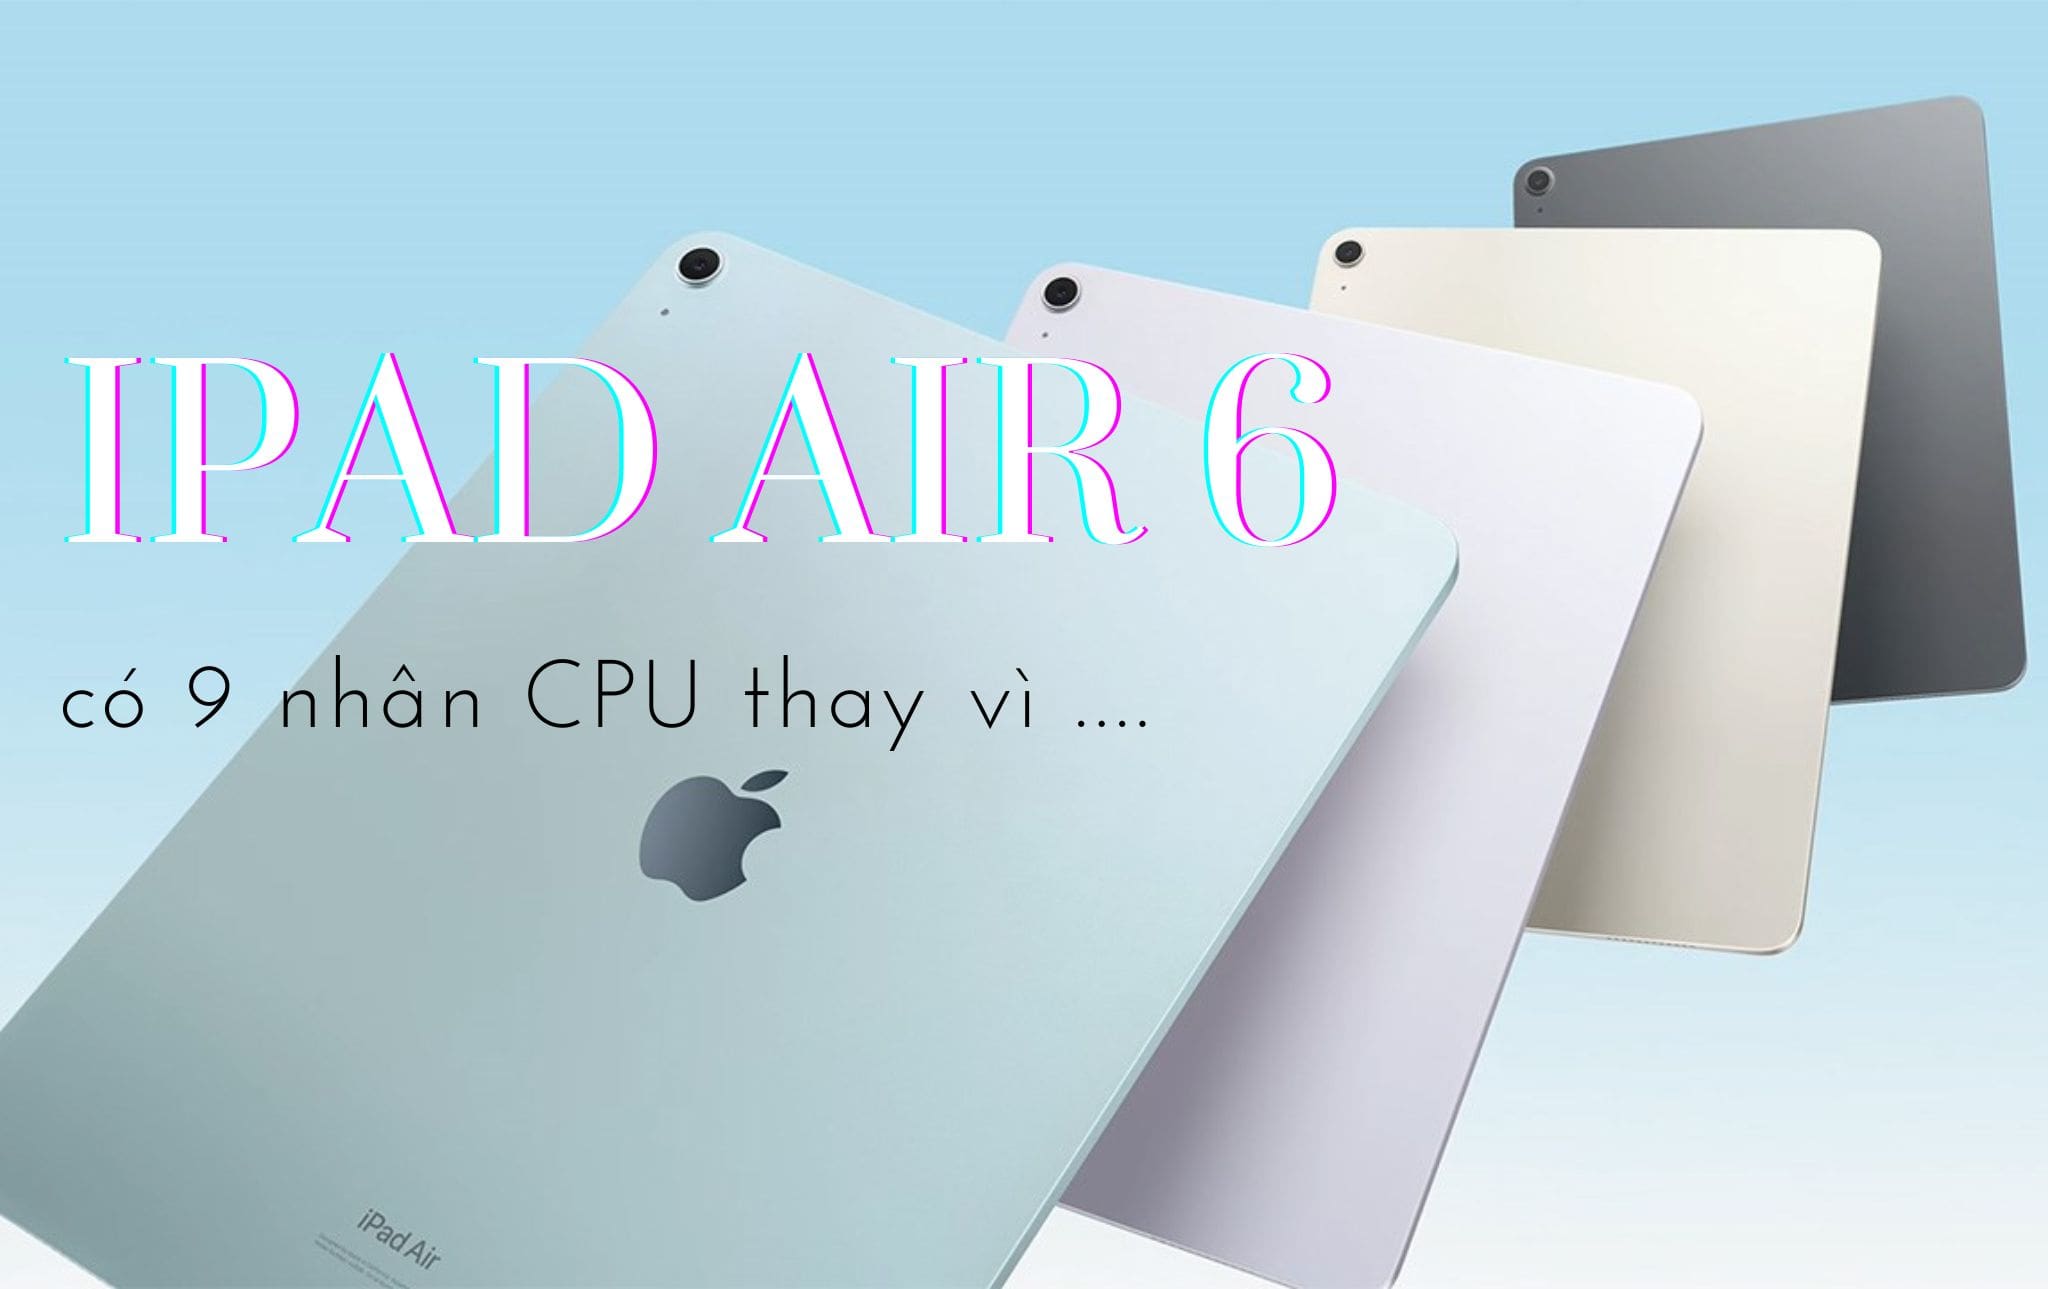 Cập nhật thông tin mới nhất về iPad Air 6, có 9 nhân CPU: Có thay đổi?